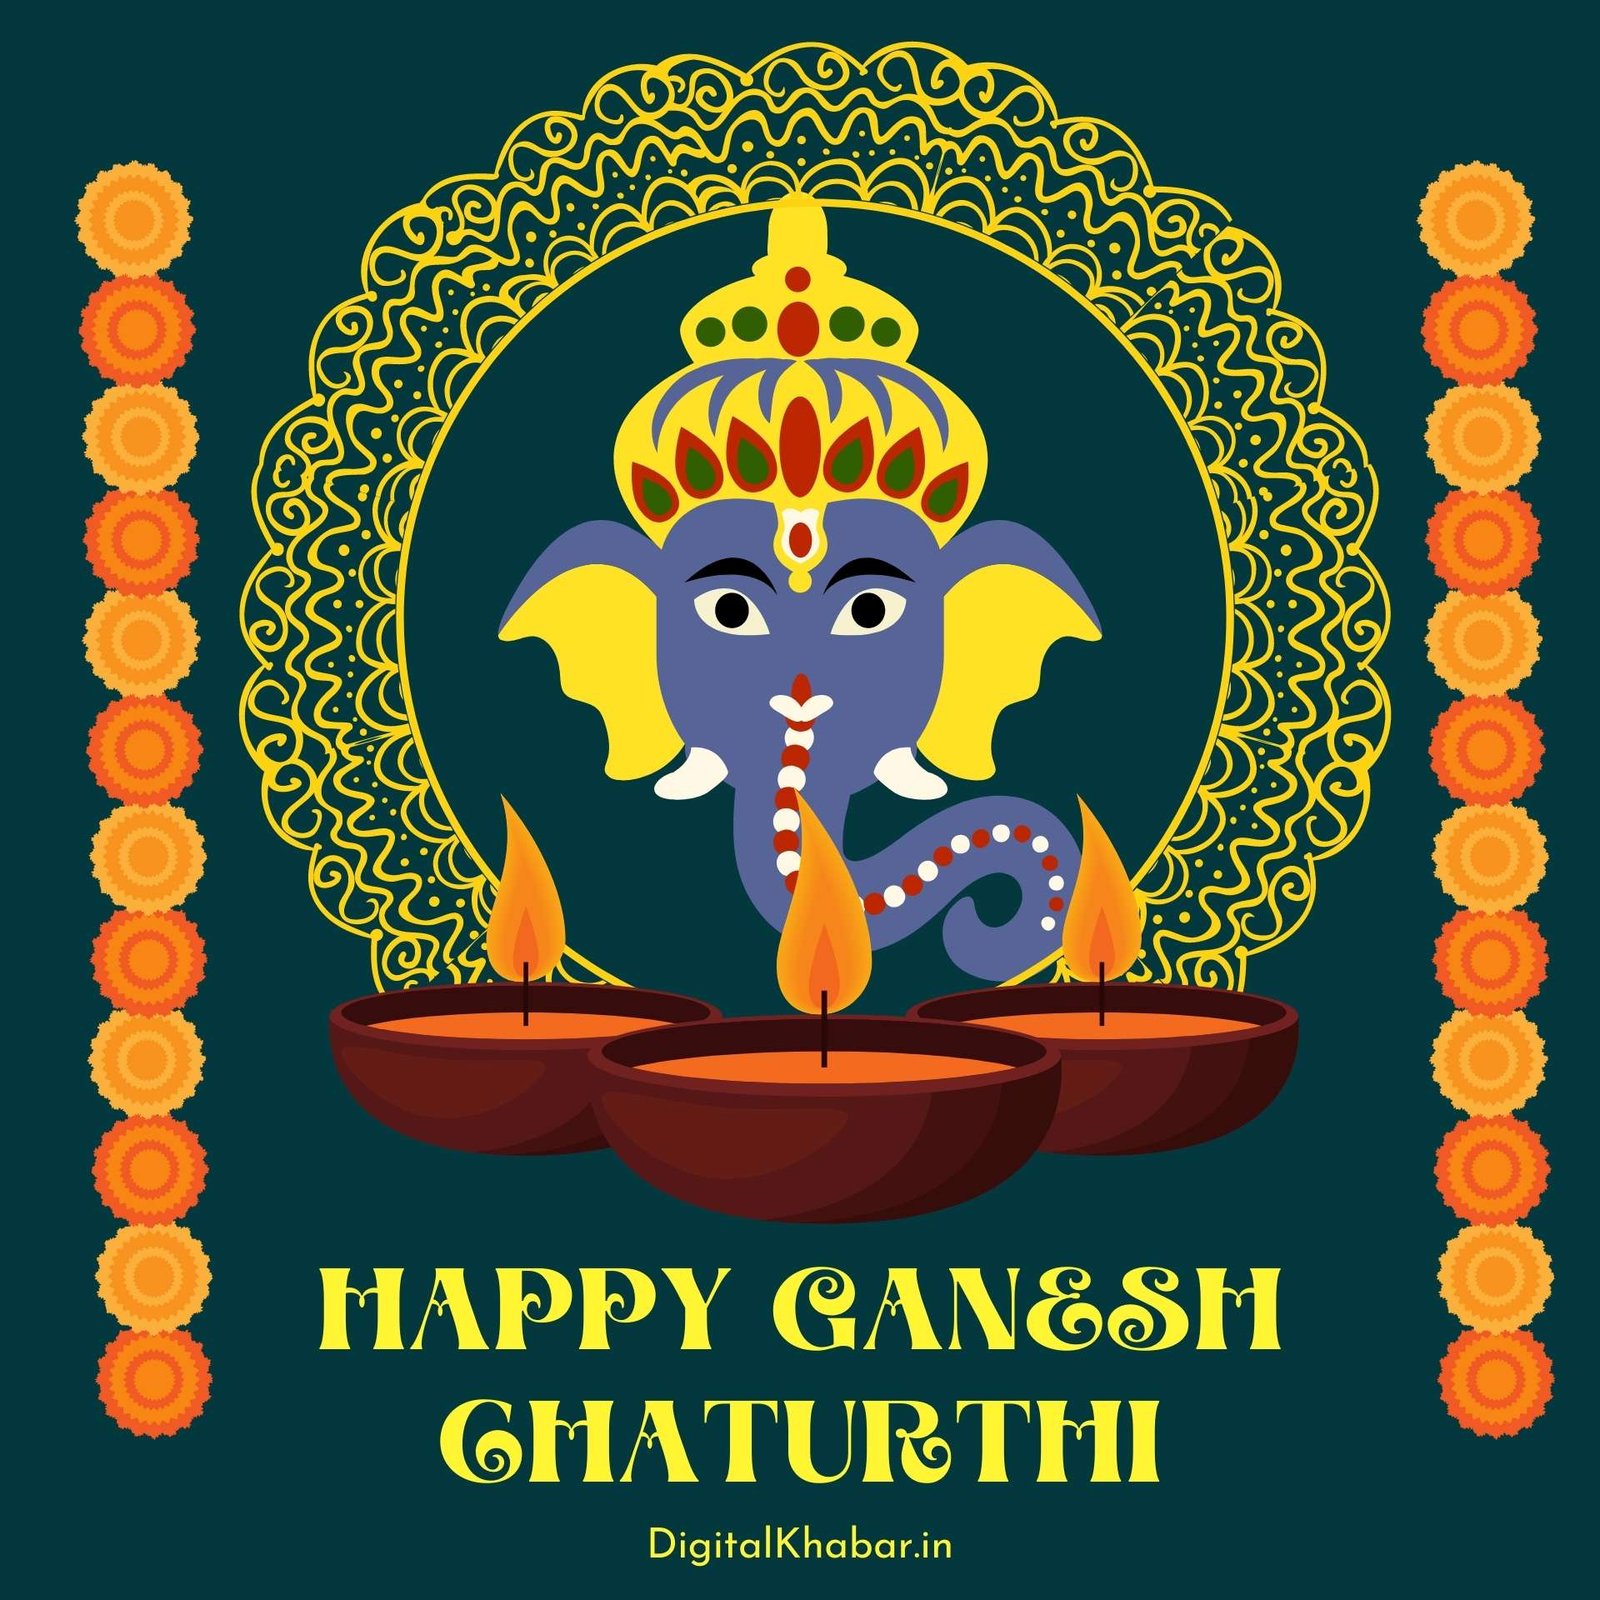 ganesh chaturthi images wallpaper download